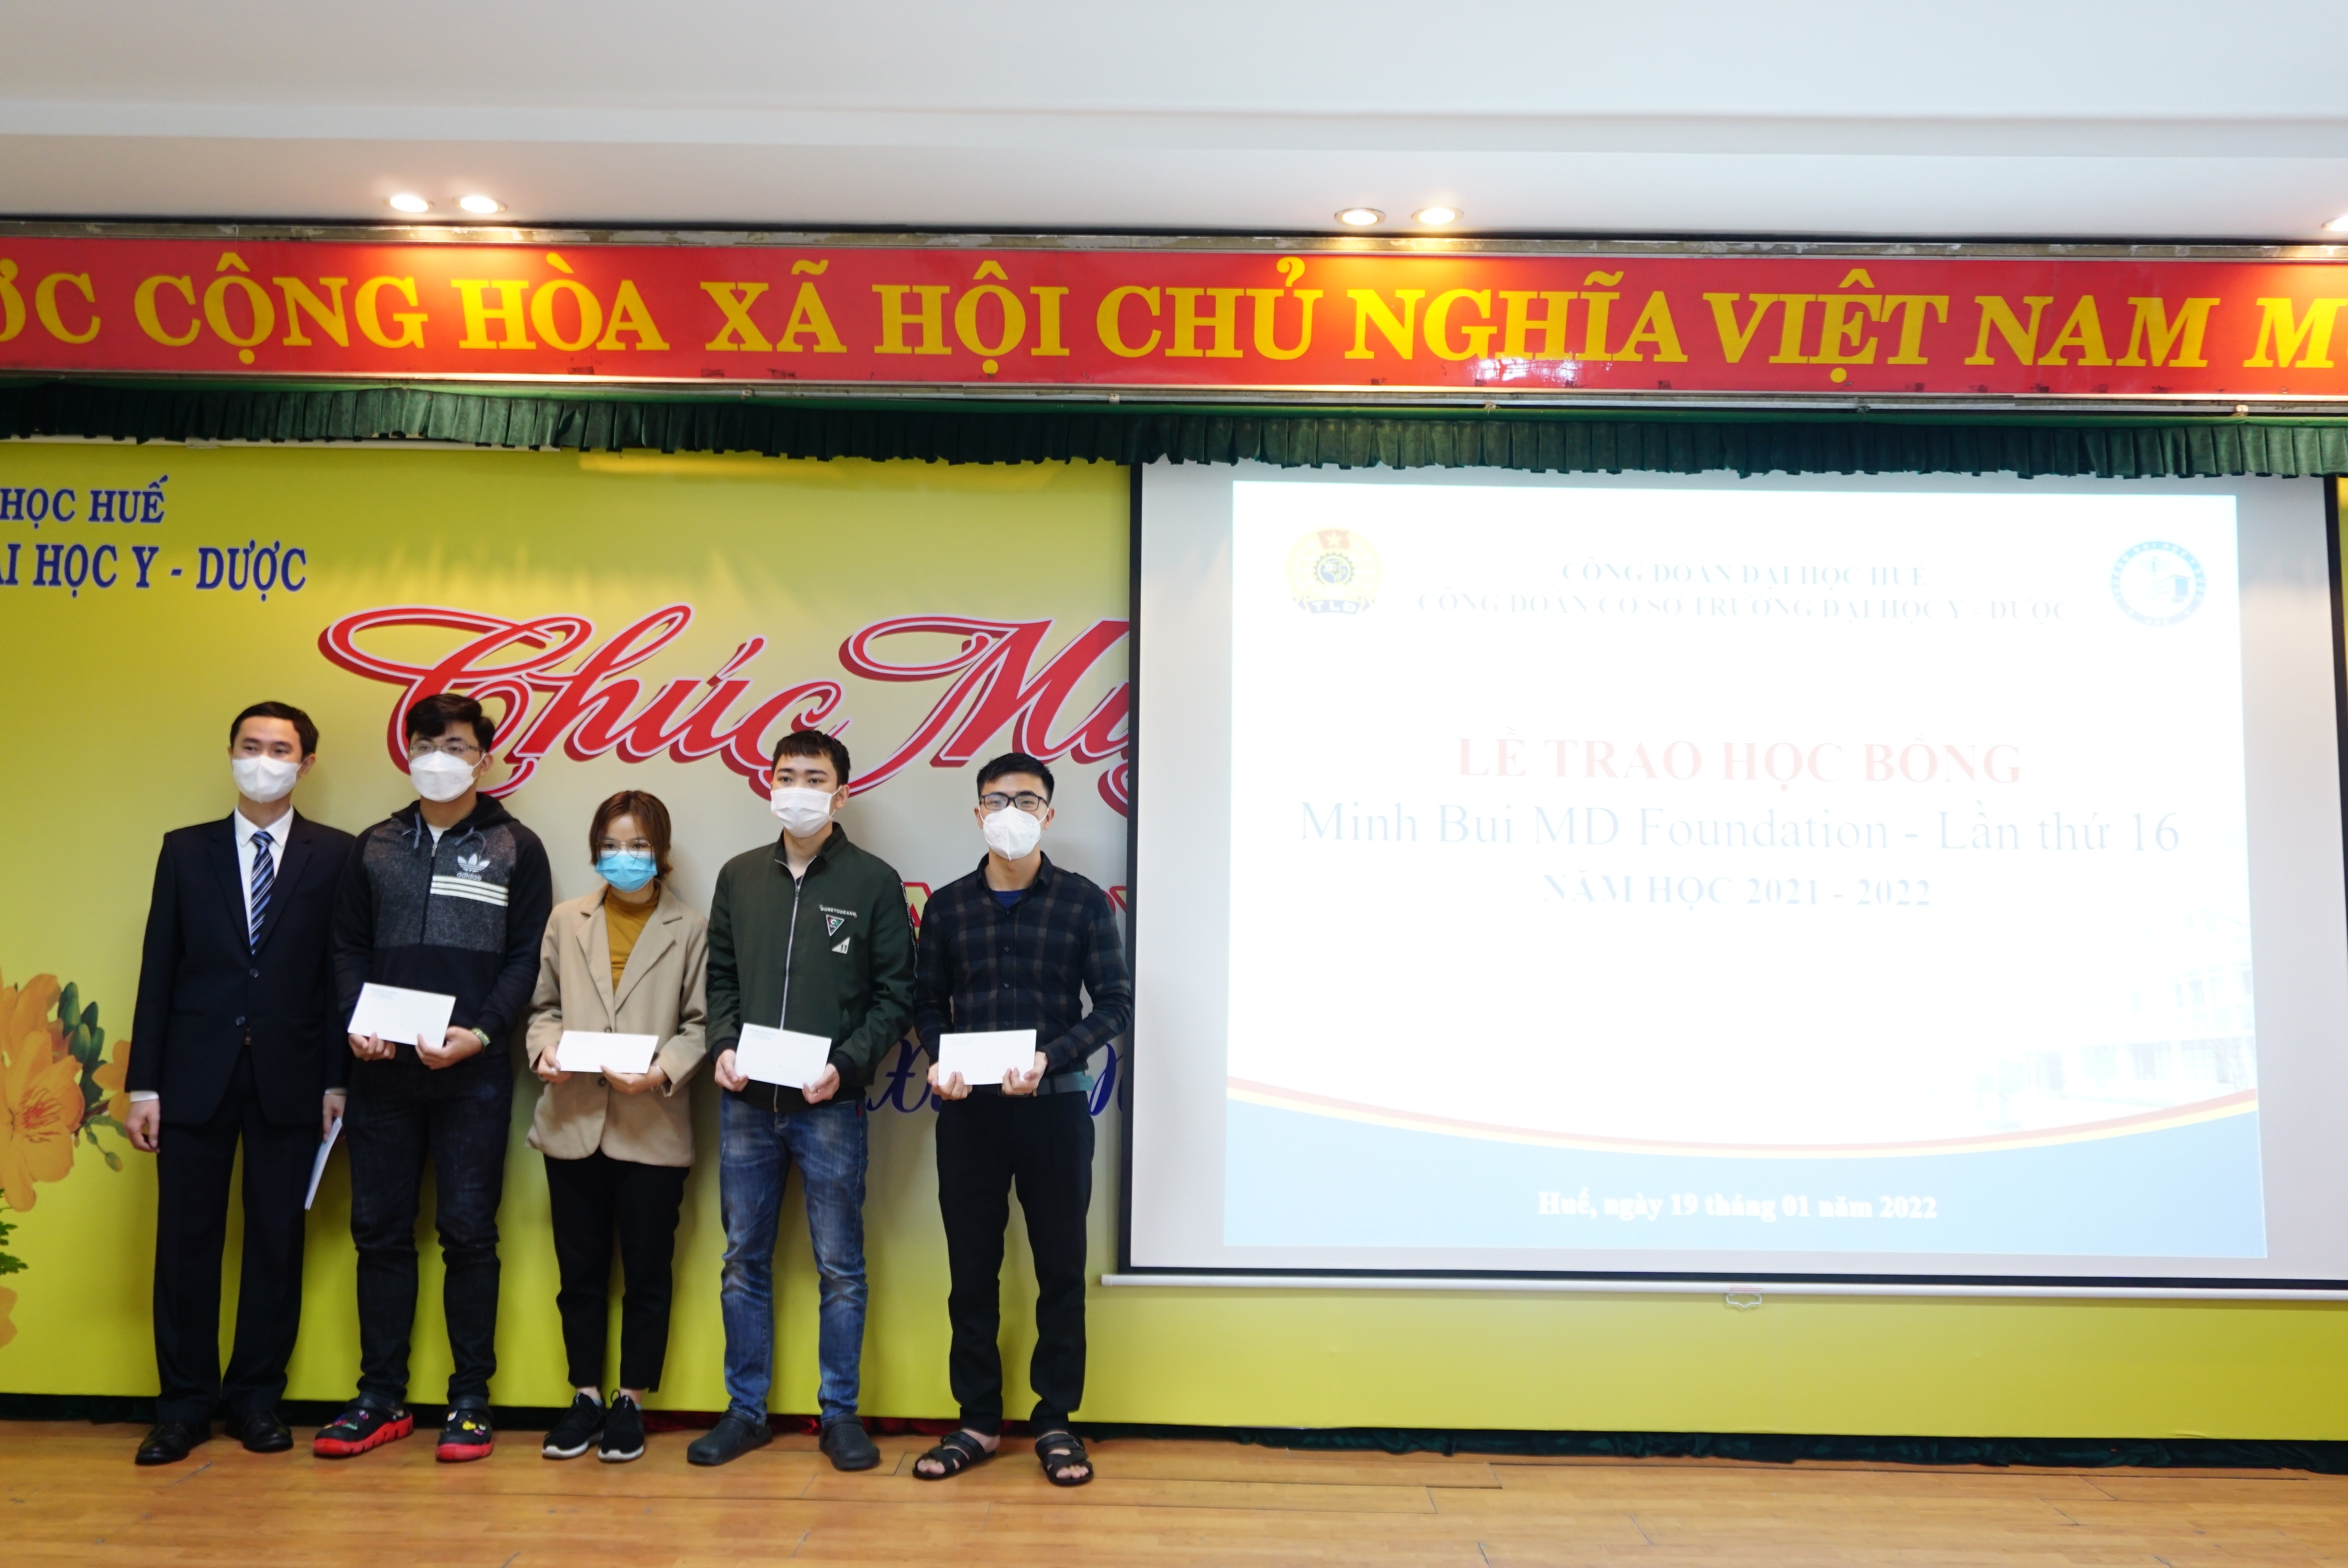 Lễ trao học bổng Minh Bui Foundation lần thứ 16 cho sinh viên Trường Đại học Y - Dược Huế